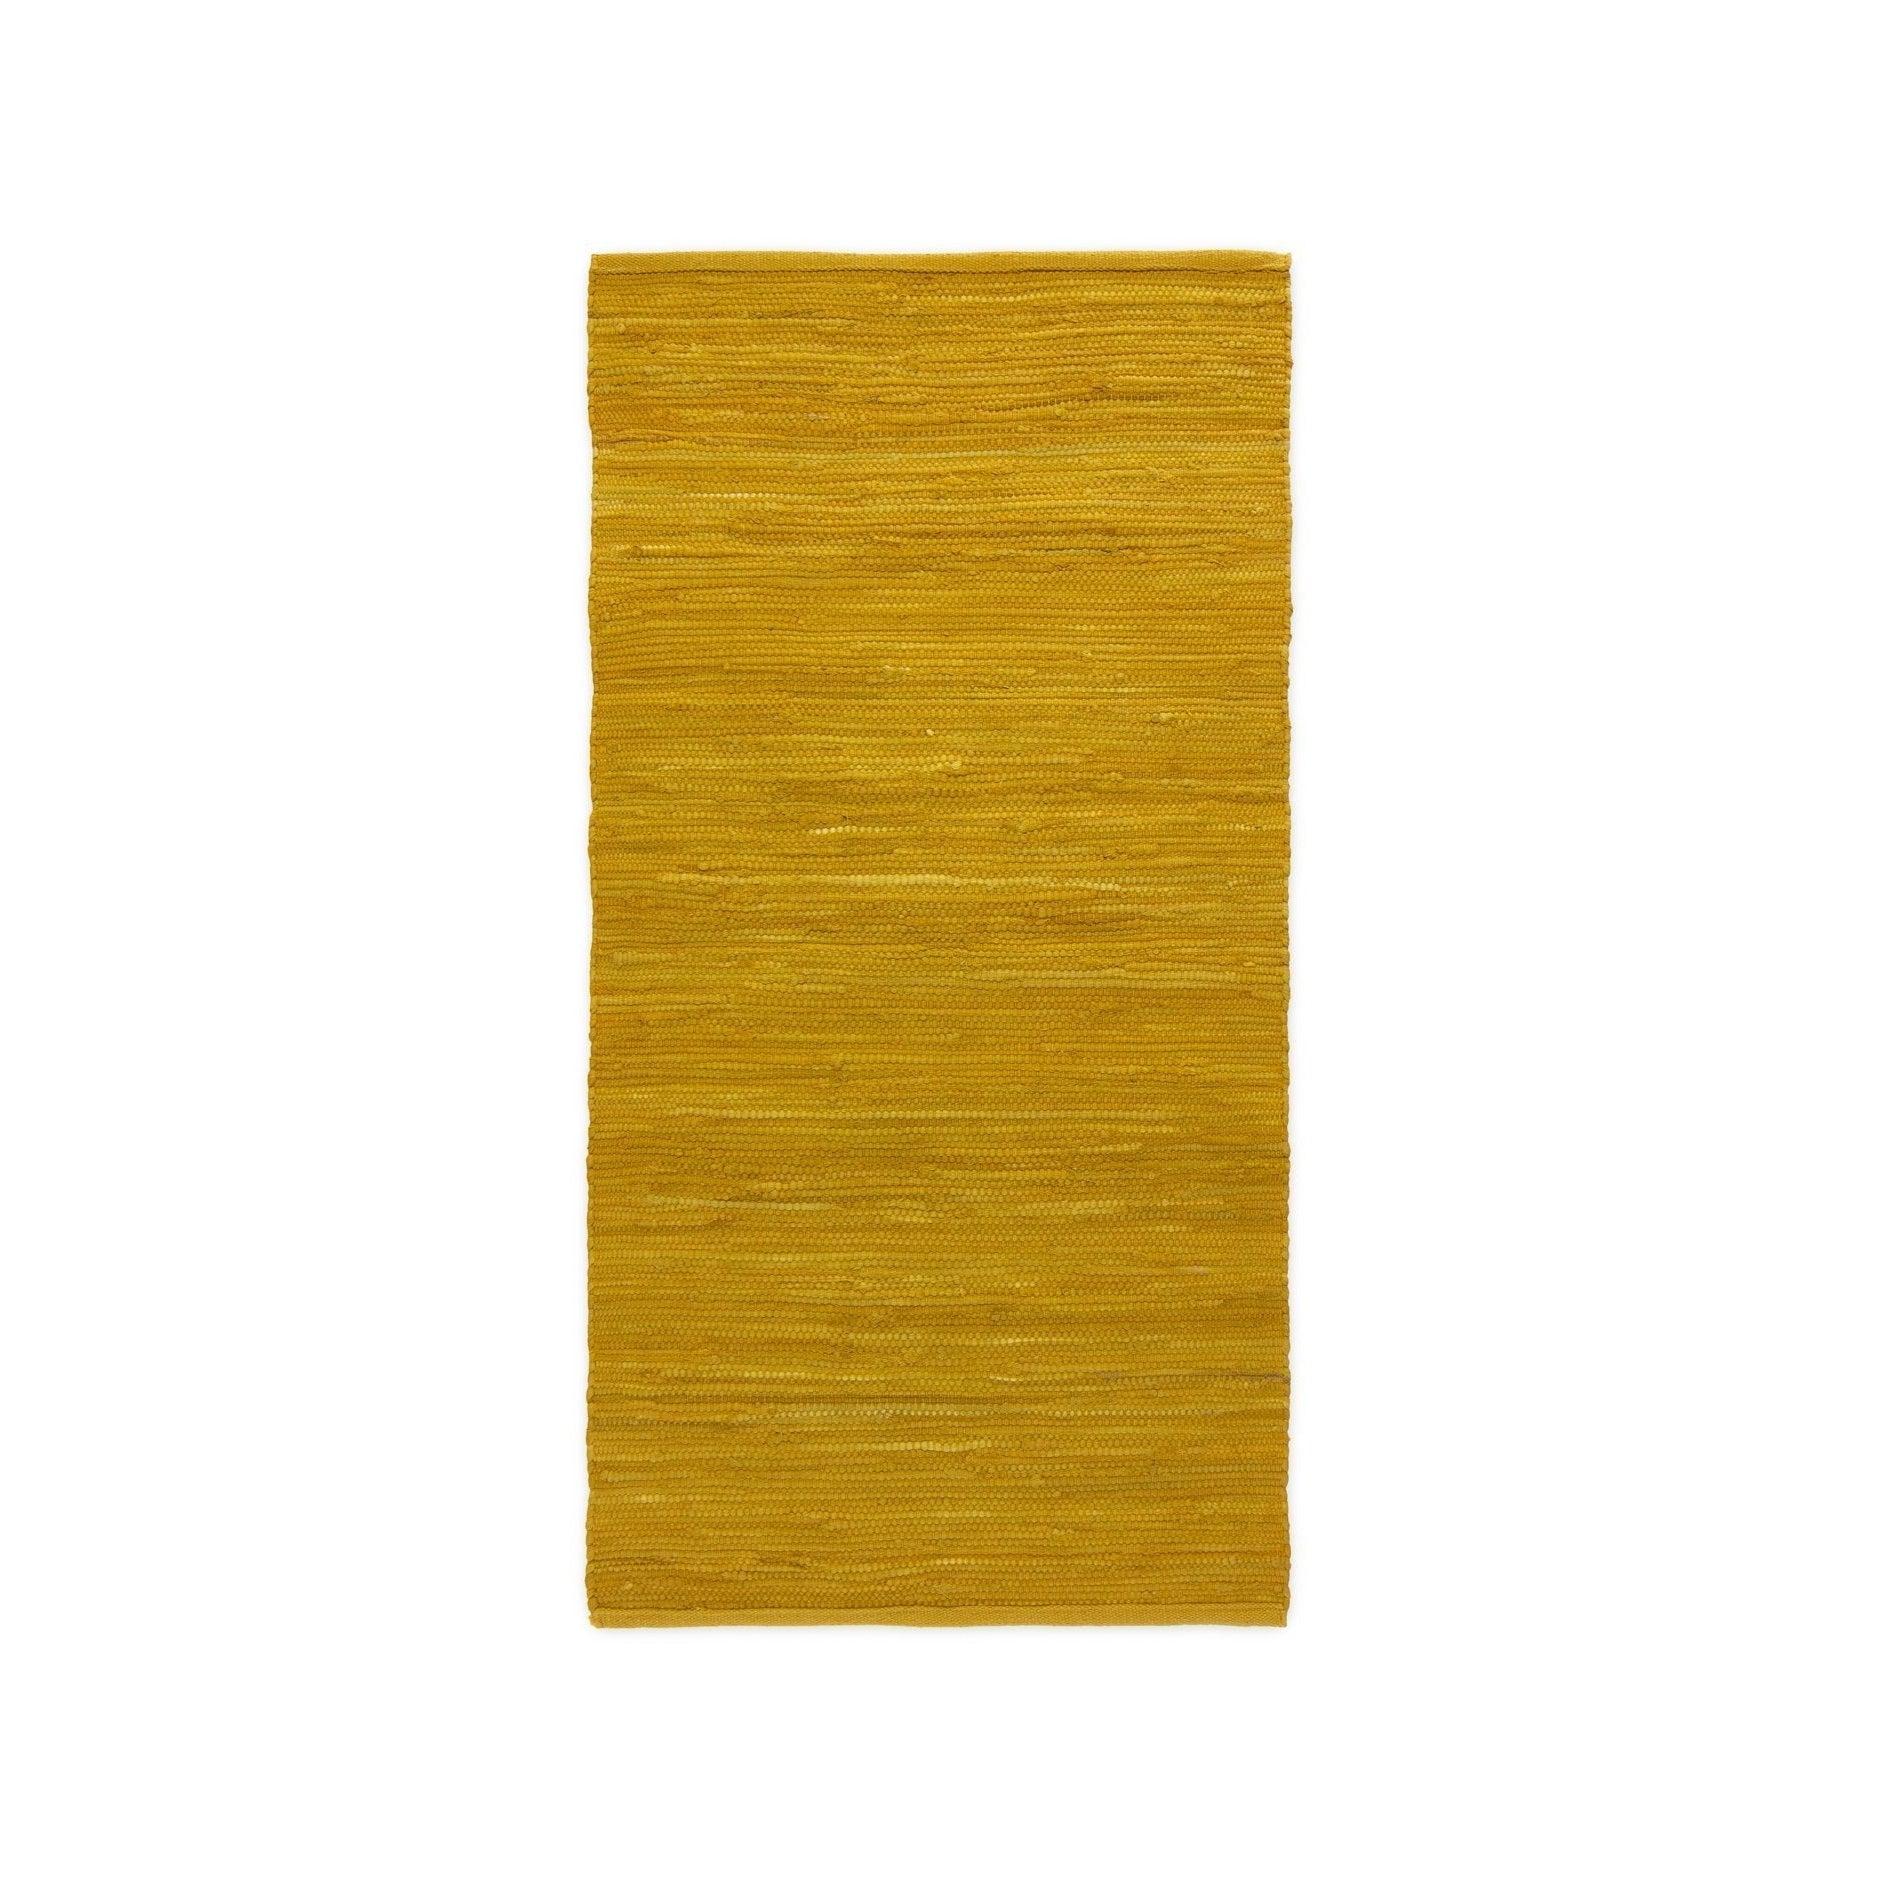 Rug Solid Tapis coton ambre brouillé, 170 x 240 cm